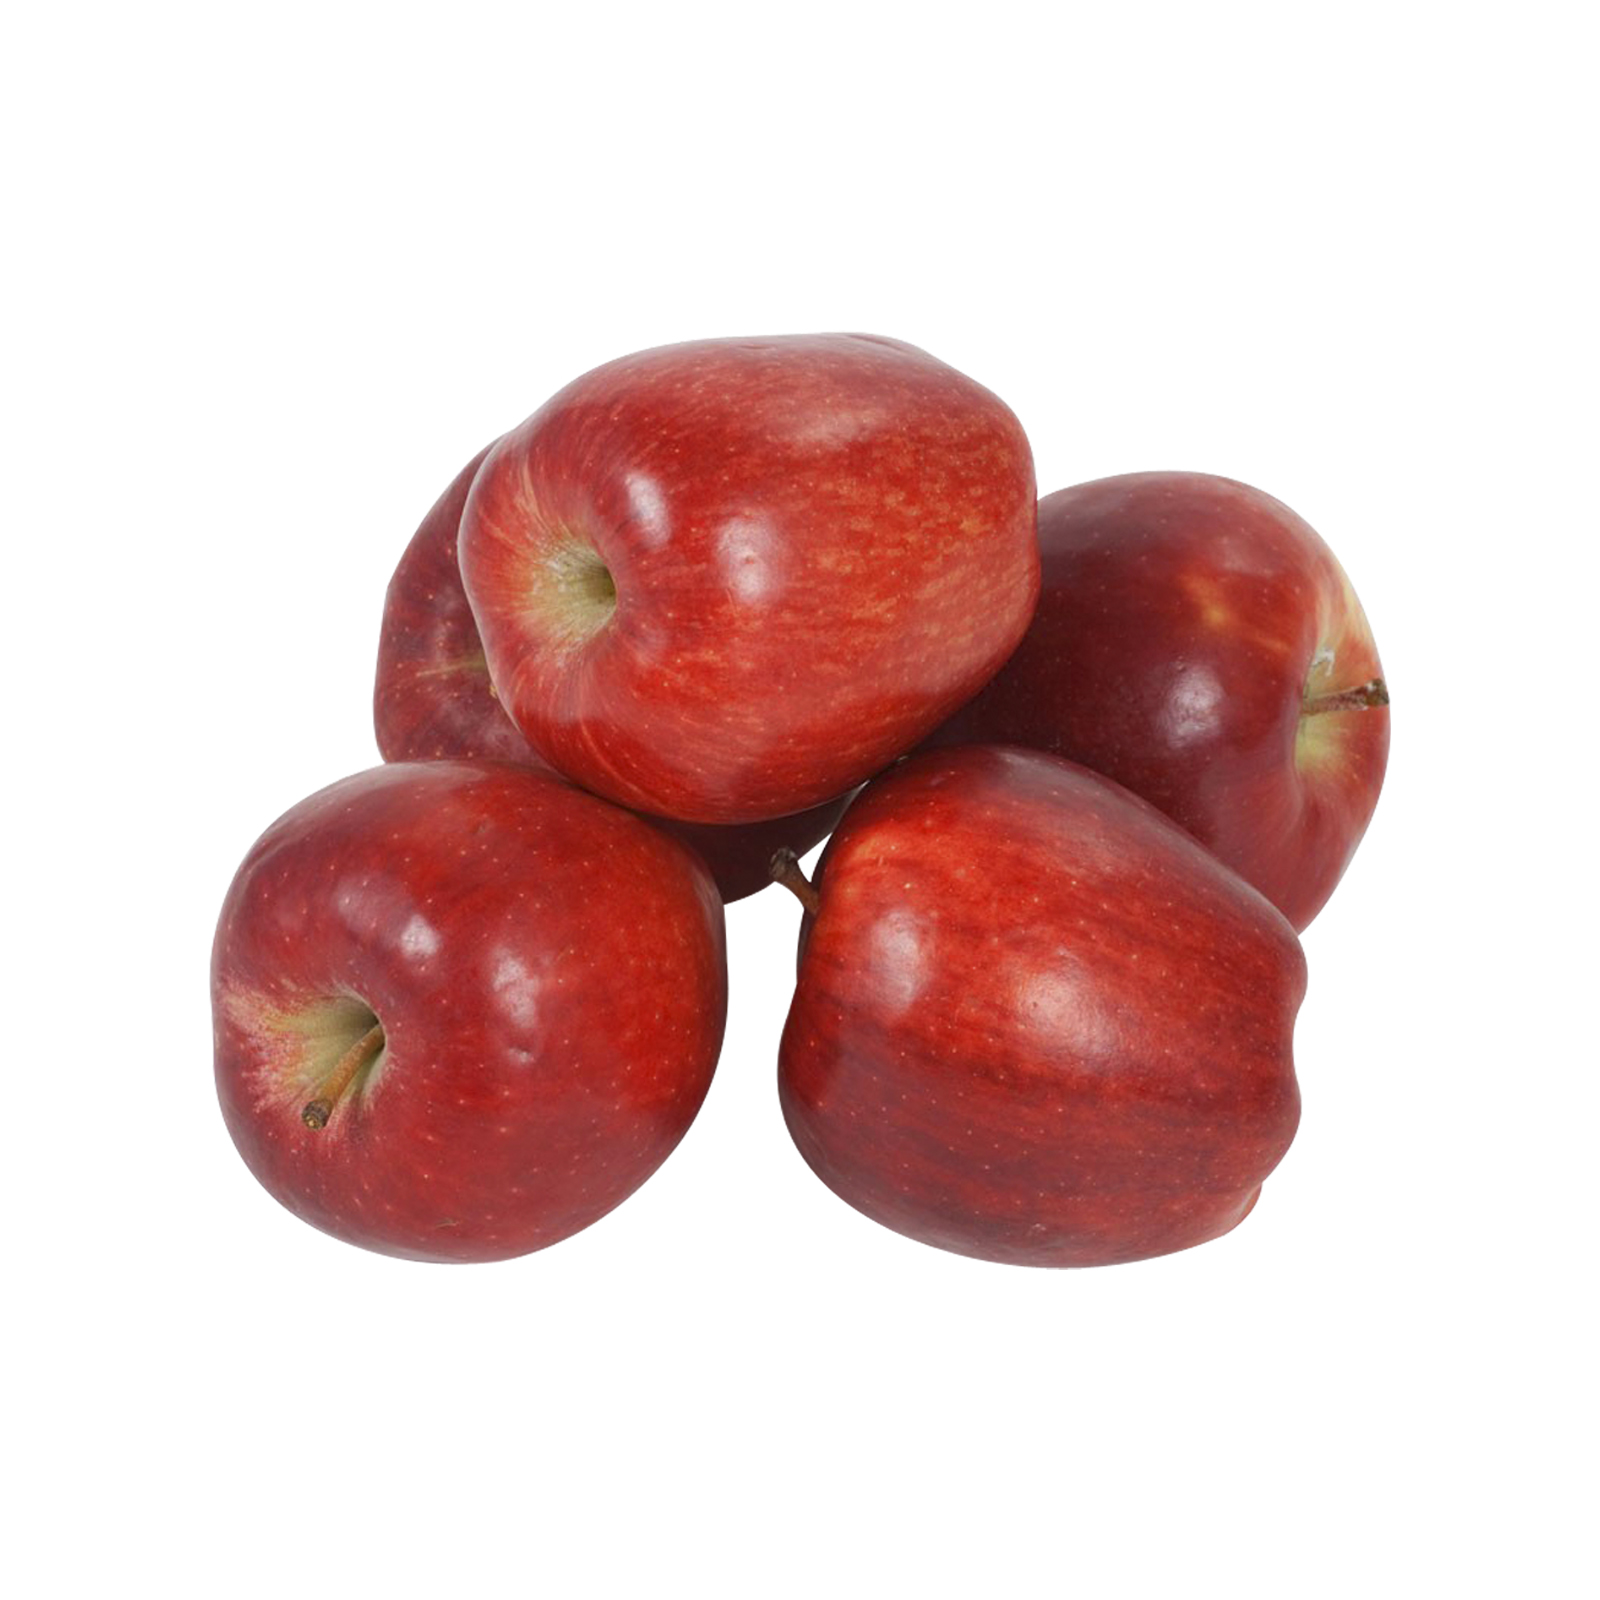 سیب قرمز - 20 کیلوگرم